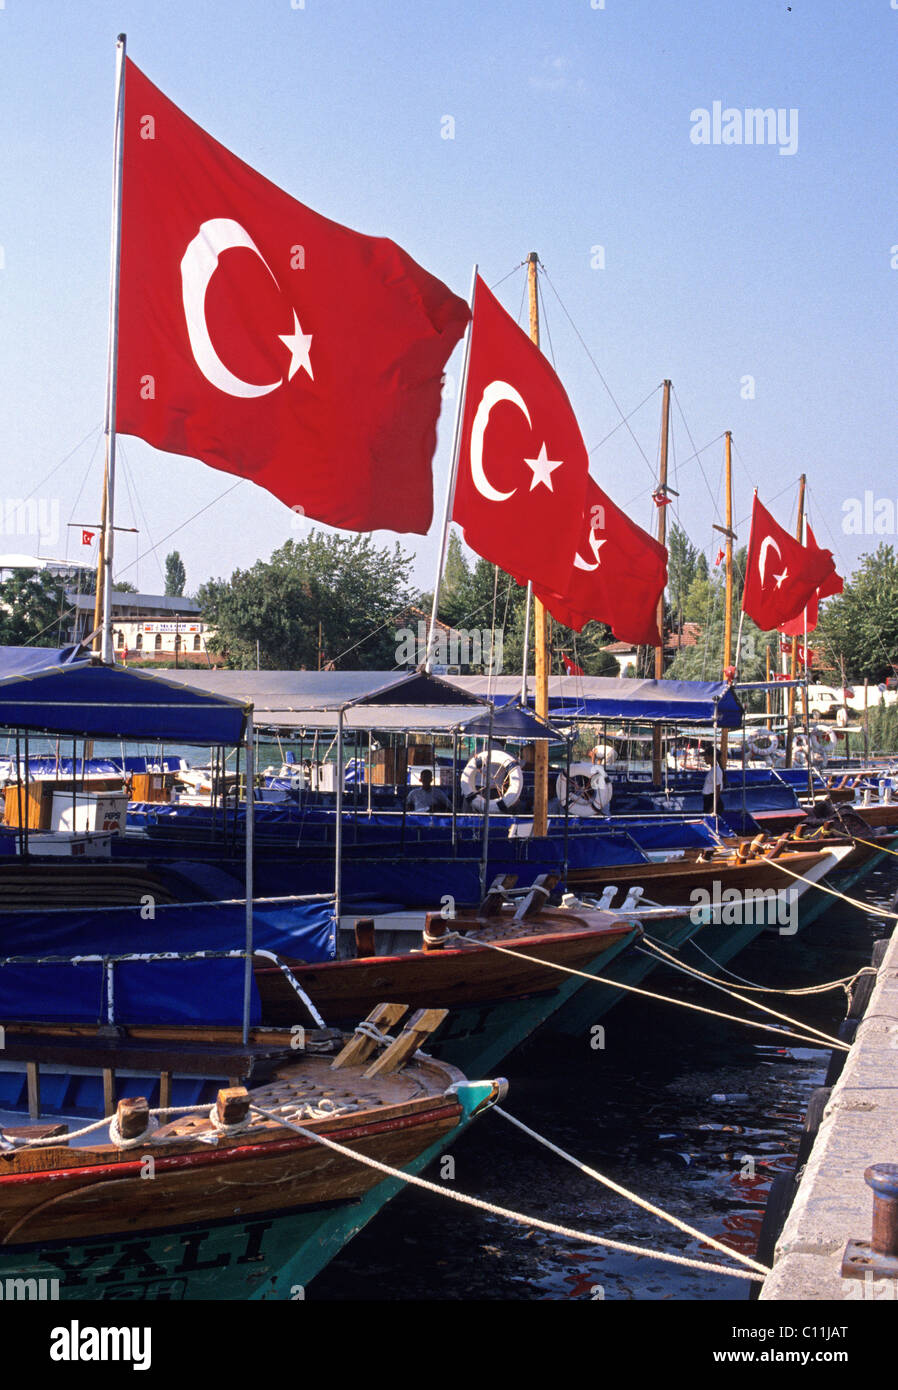 Le drapeau turc - drapeau de la Turquie Banque D'Images